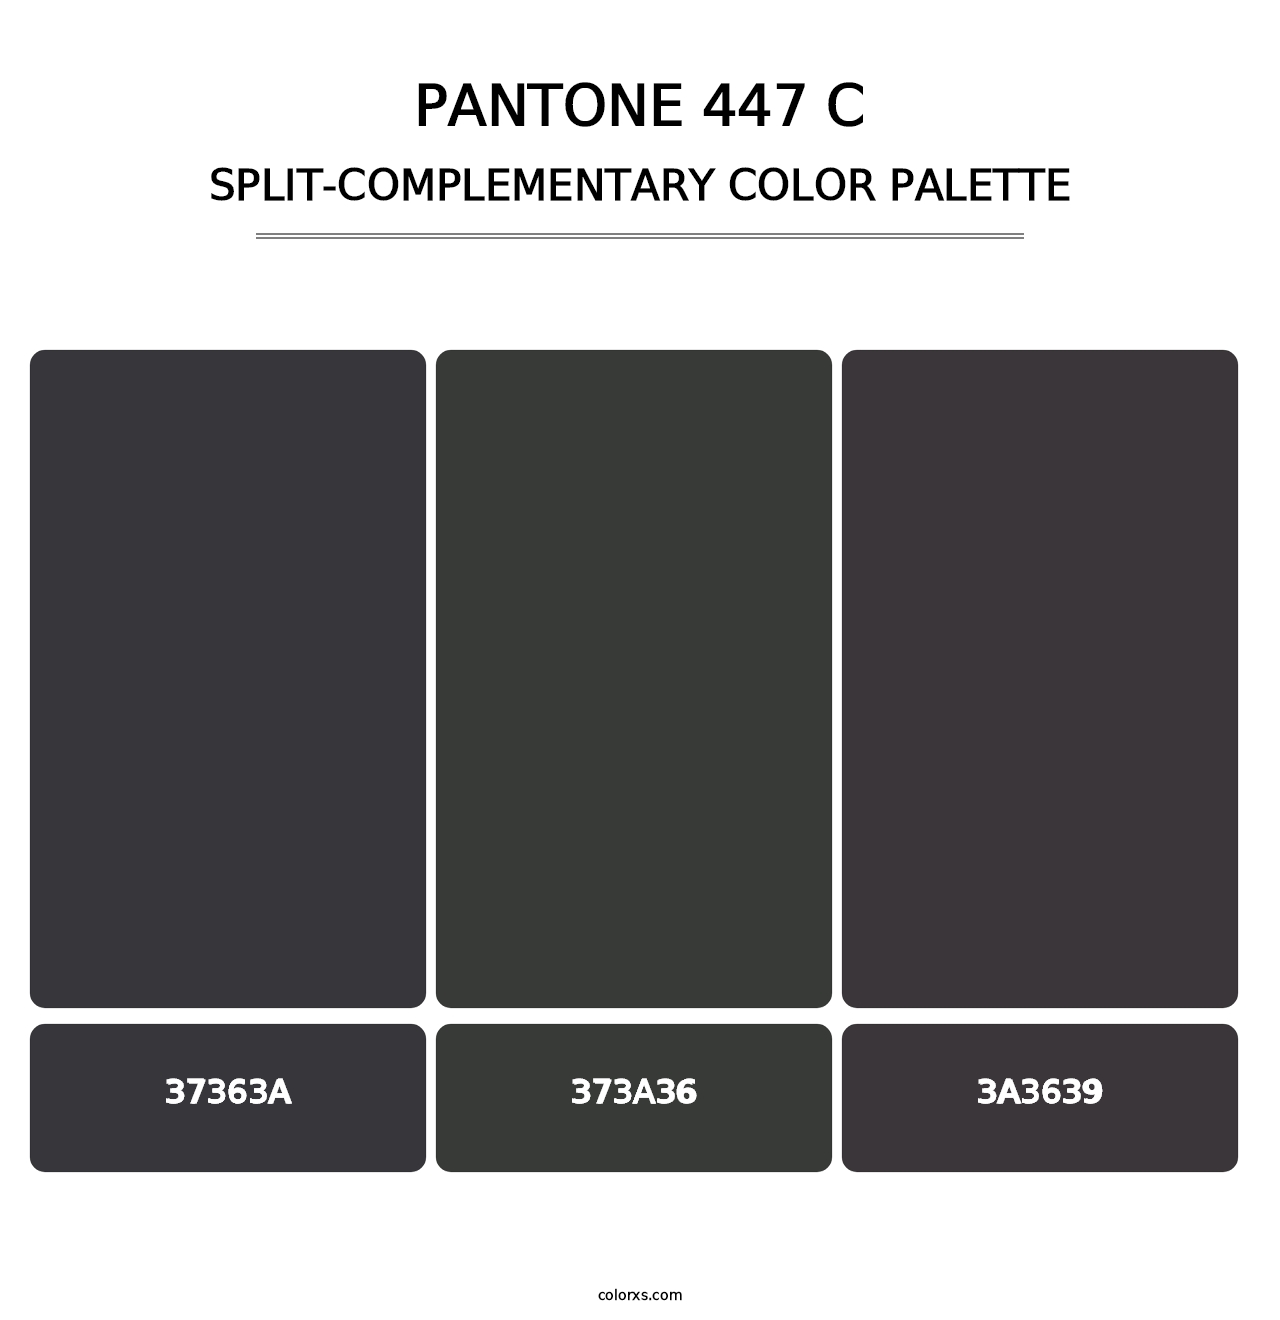 PANTONE 447 C - Split-Complementary Color Palette